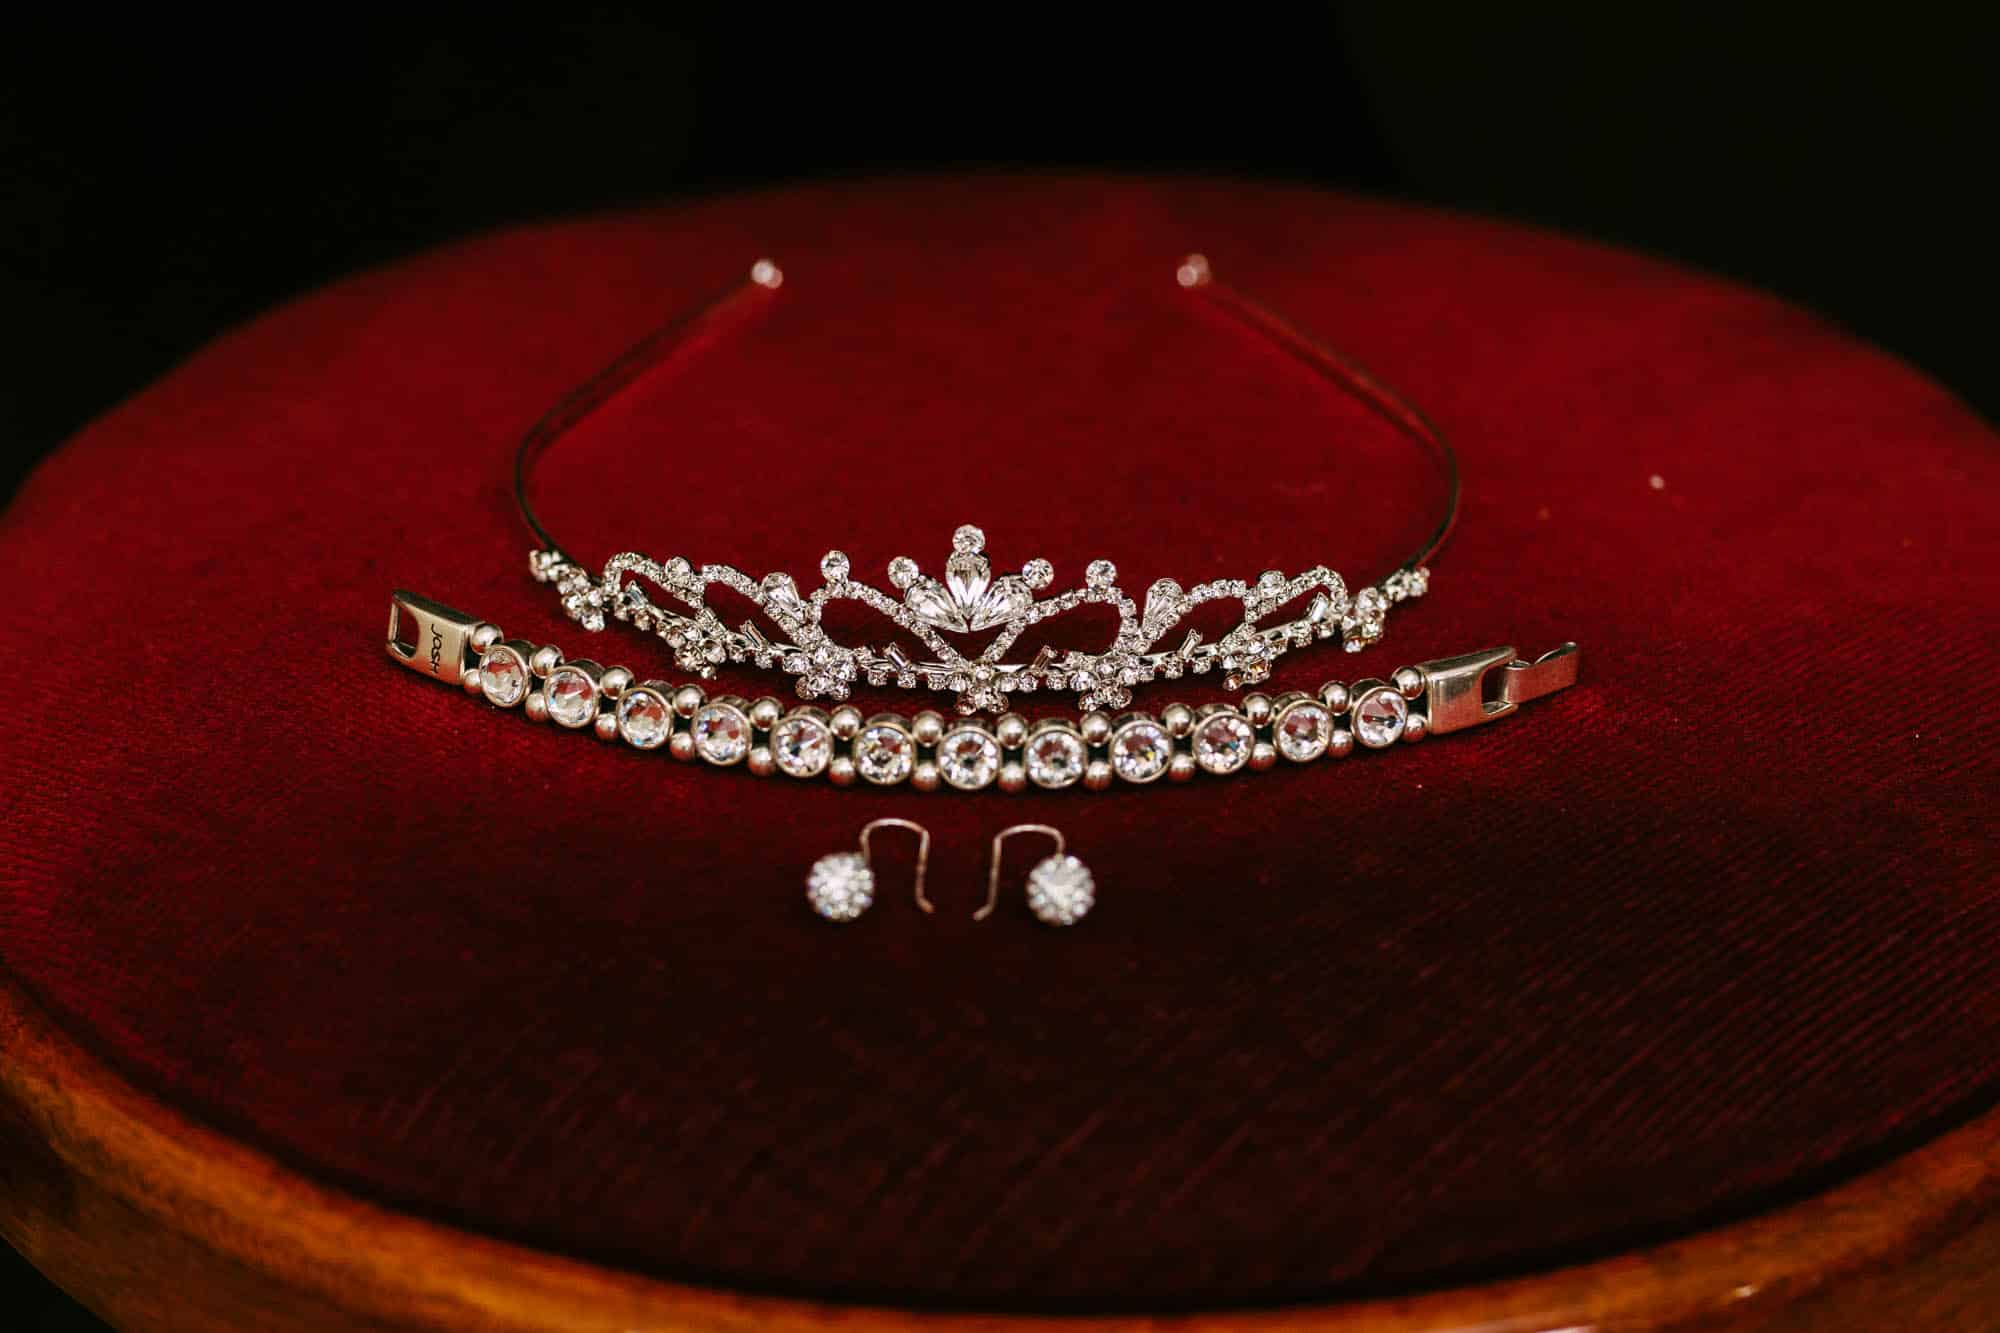 Een tiara en oorbellen op een rode tafel, perfect voor bruidskapsels.